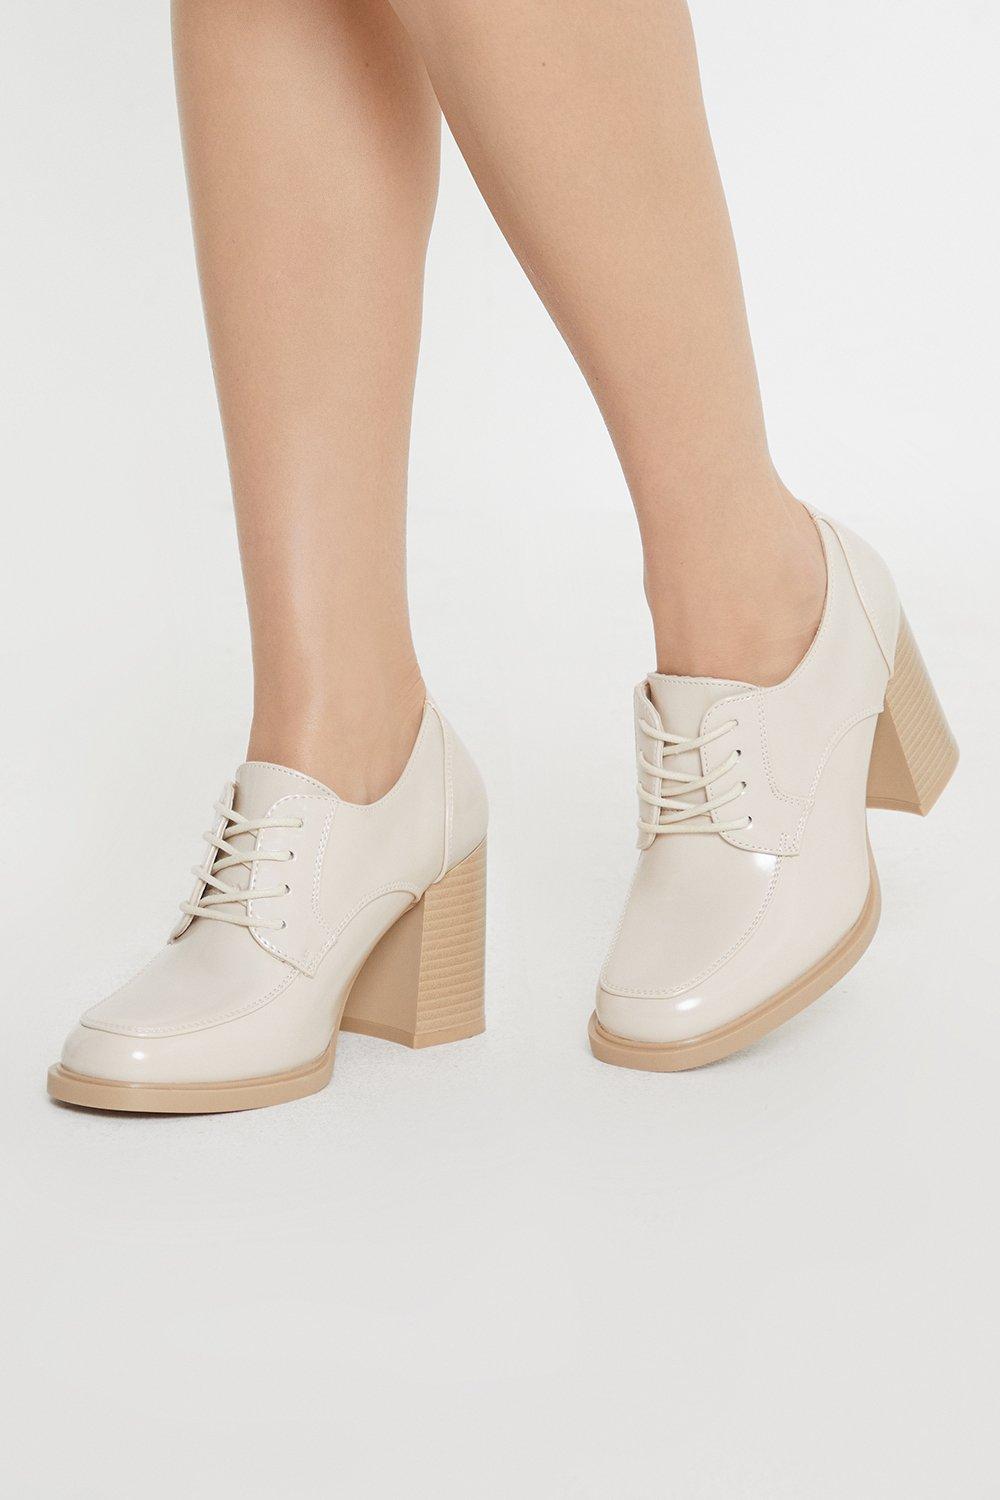 Women’s Principles: Lara Front Lace Up High Block Heel Shoe - beige - 8